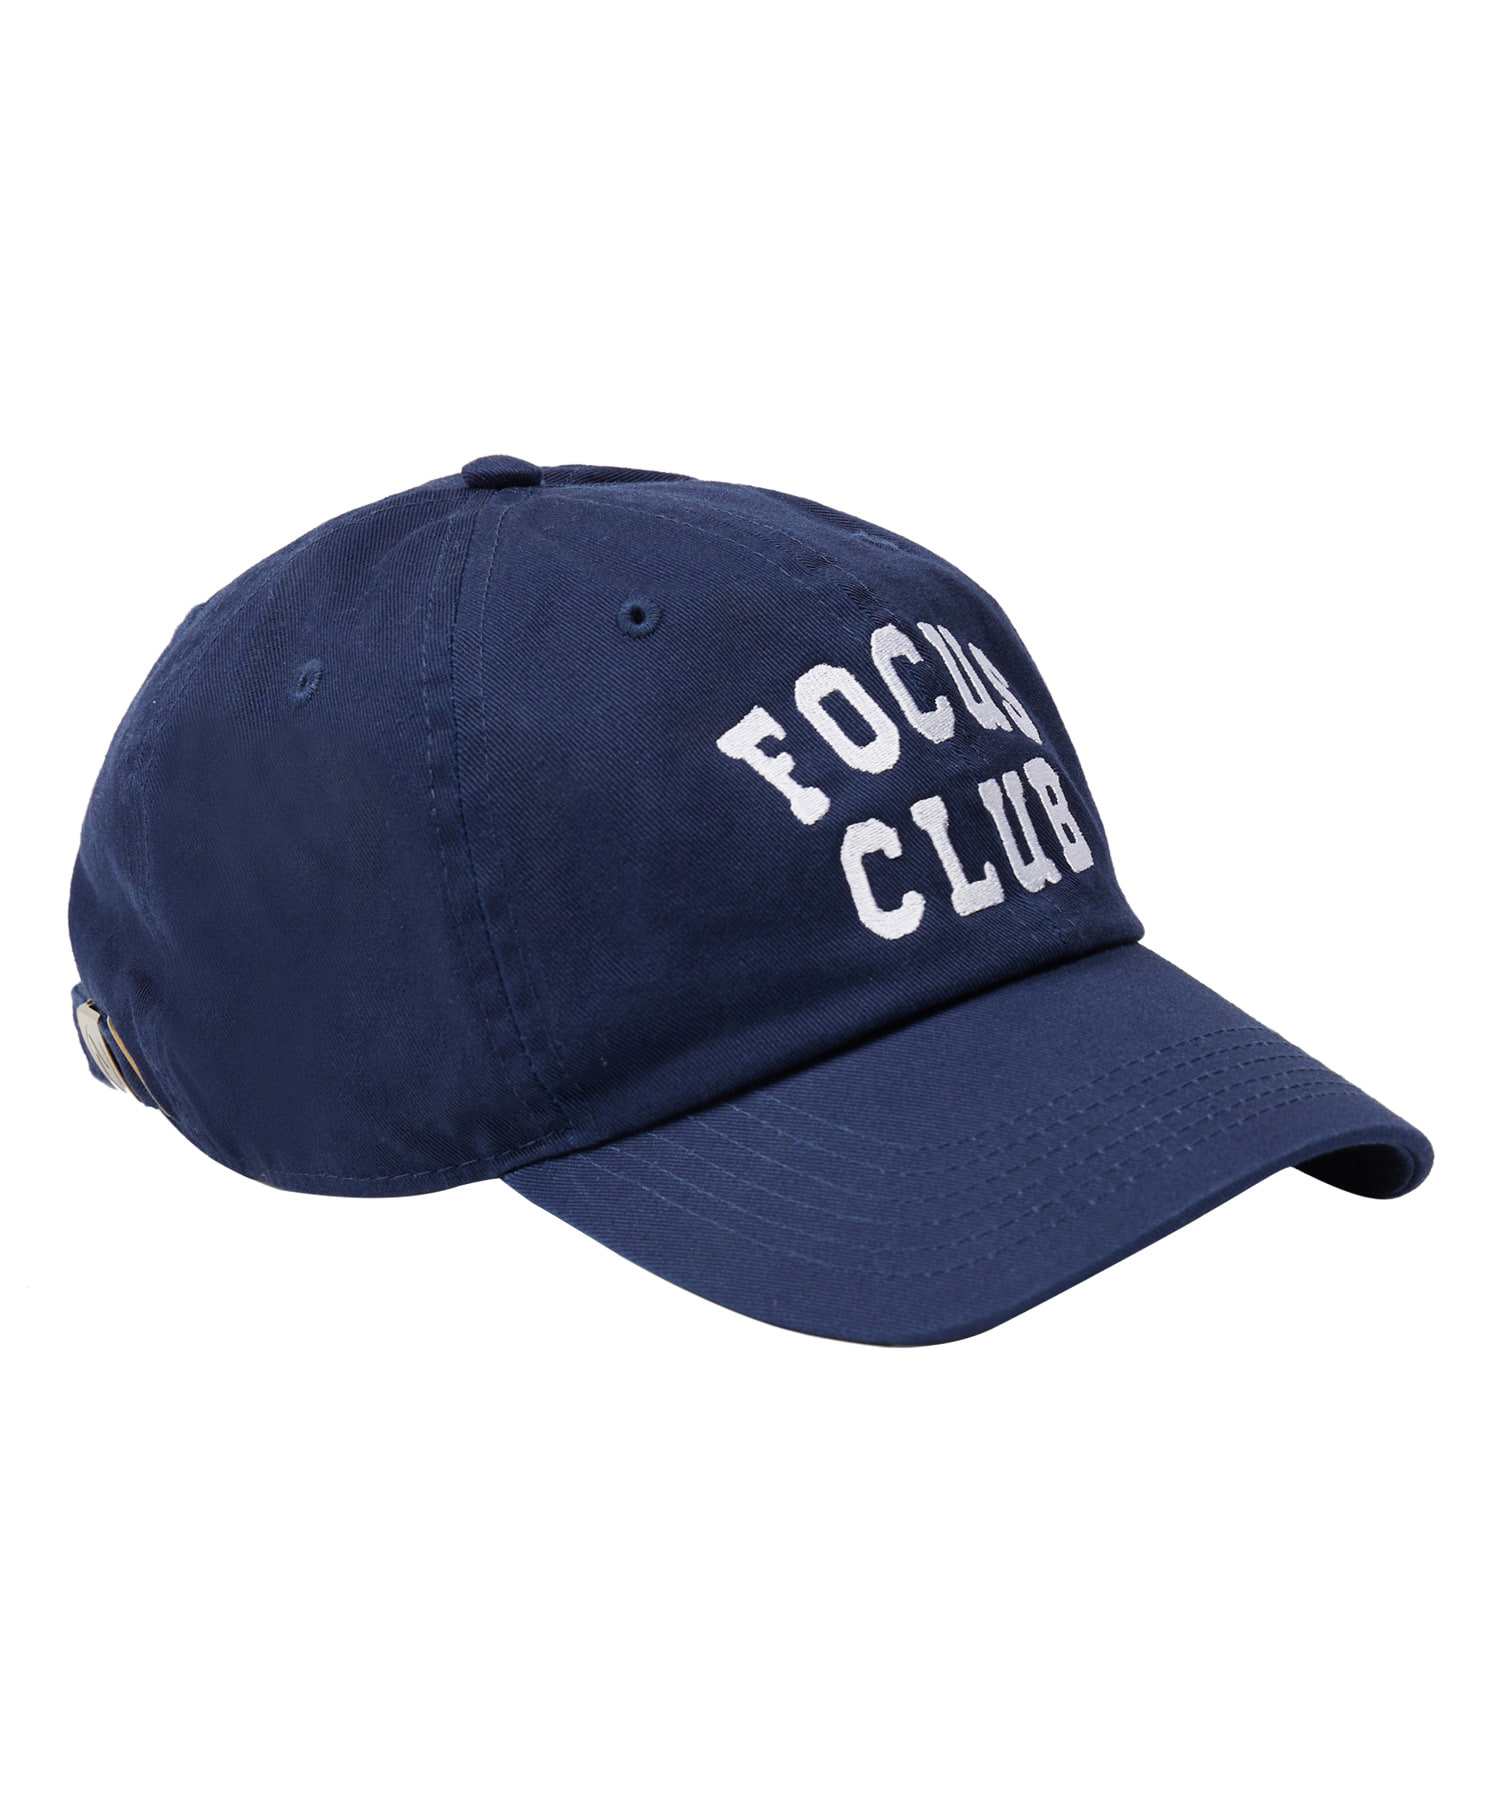 라이프 아카이브 FOCUS CLUB BALL CAP_NAVY 라이프,LIFE, LIFE ARCHIVE,볼캡,라이프볼캡,ballcap